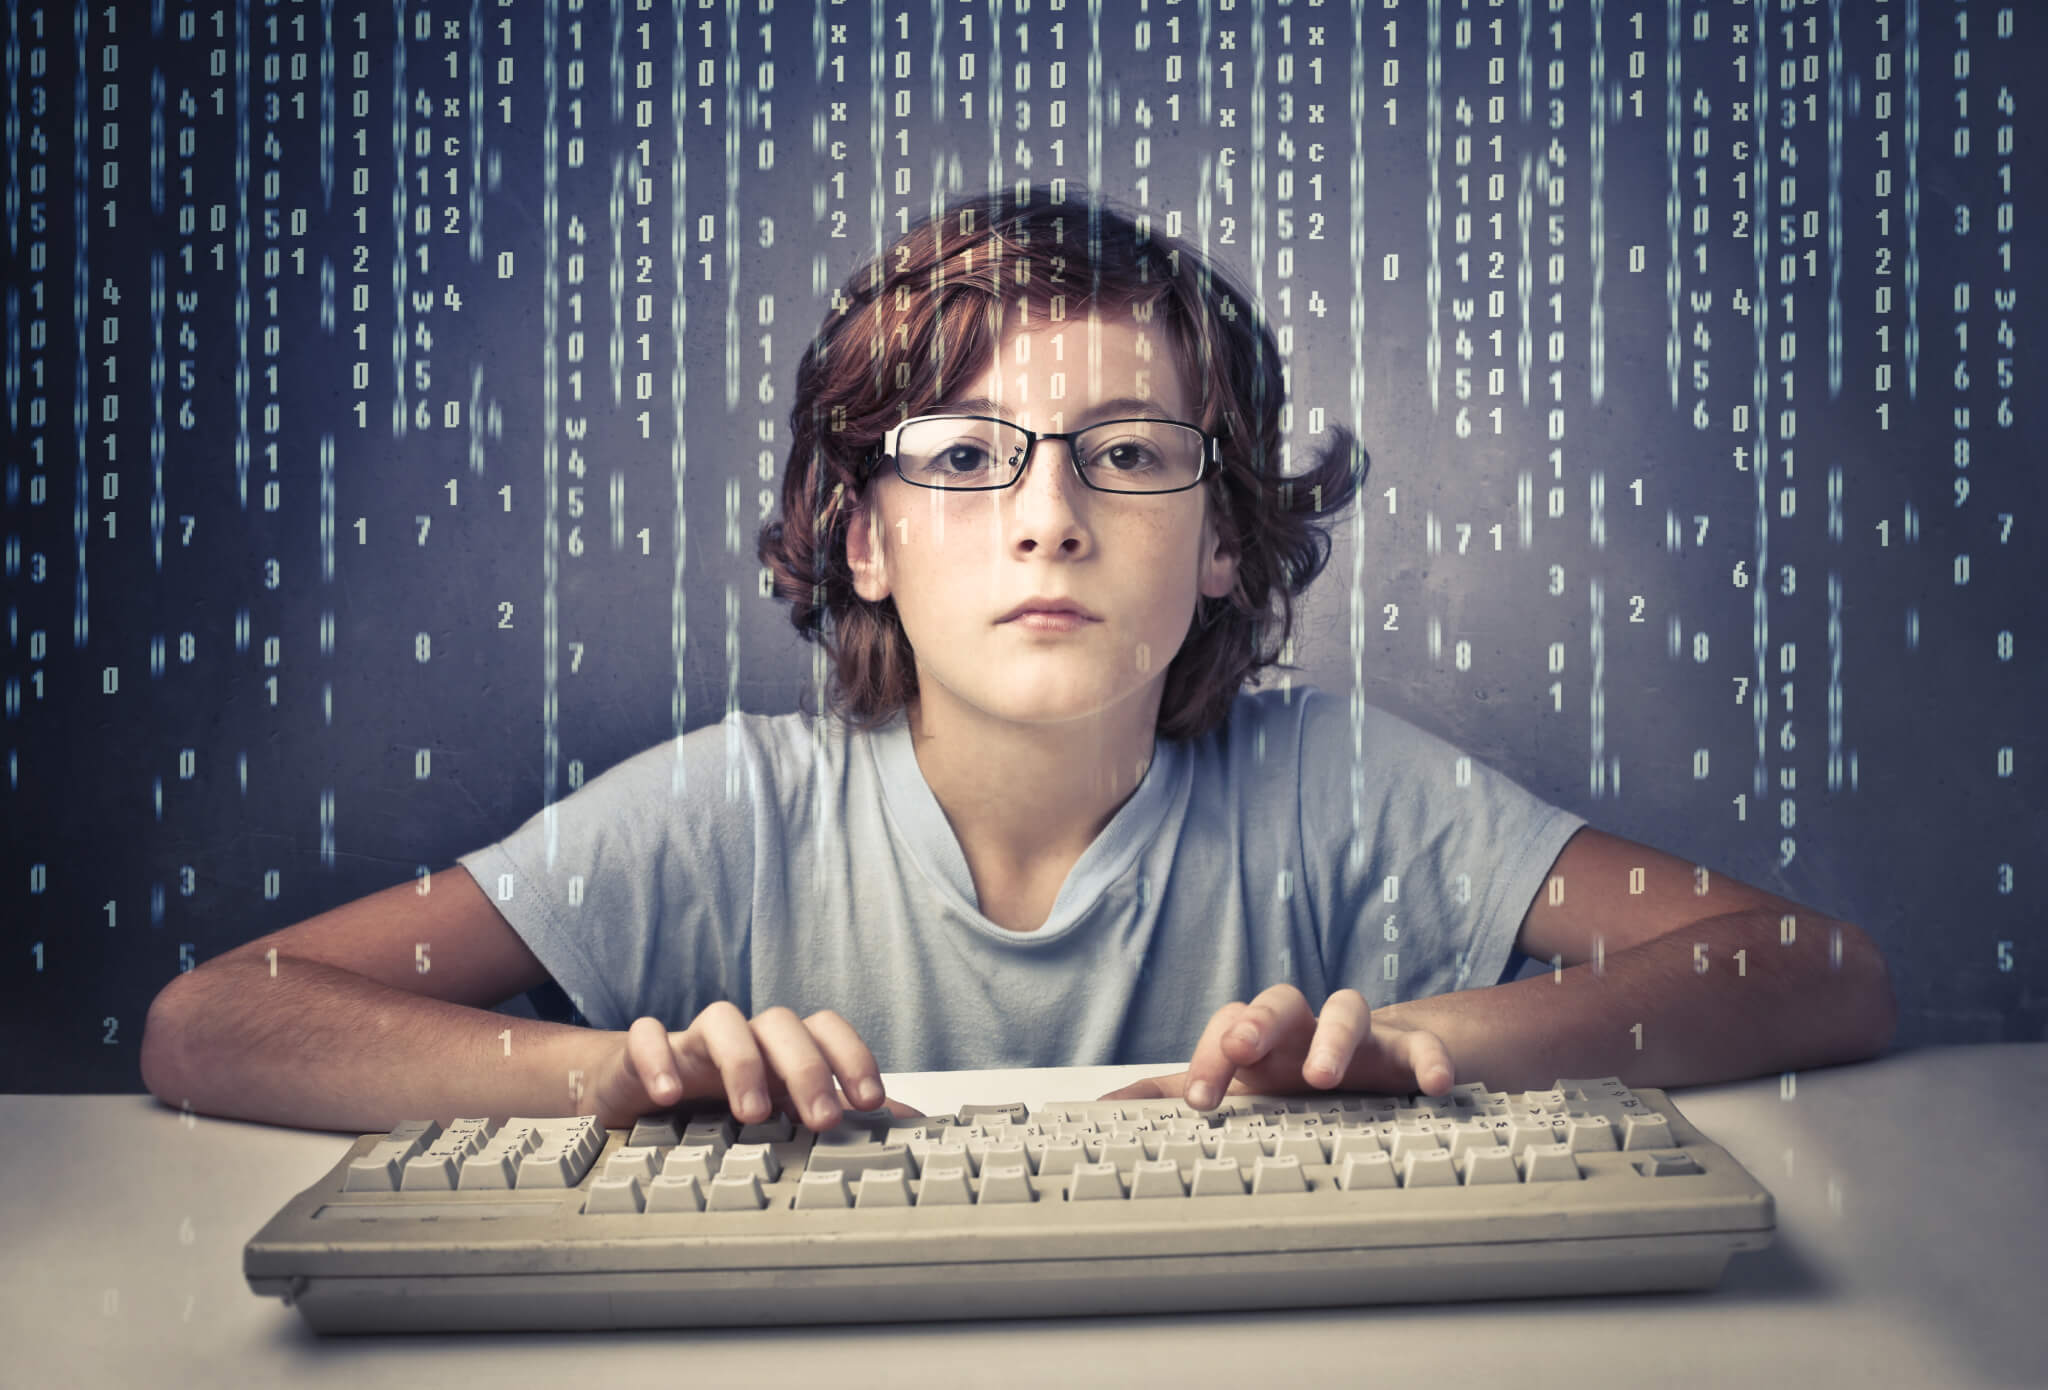 Исправь компьютер. Подросток и компьютер. Юный программист. Компьютерные игры для детей. Интернет зависимость.